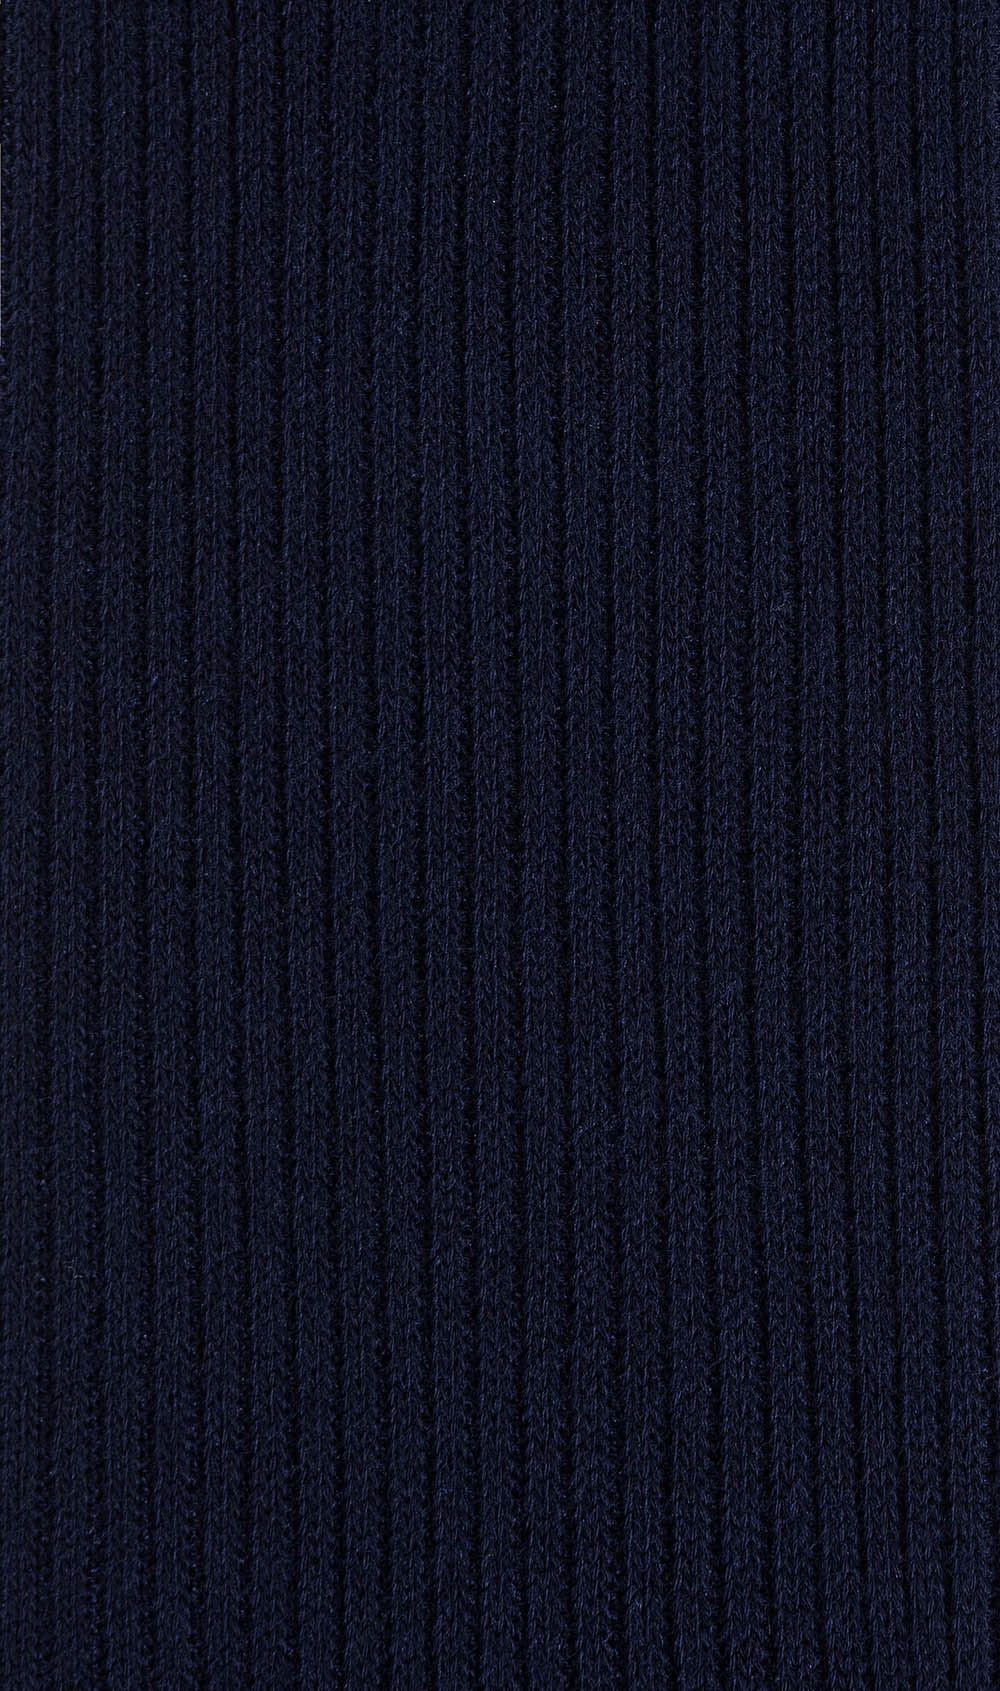 Dark Midnight Navy Blue Ribbed Socks Pattern